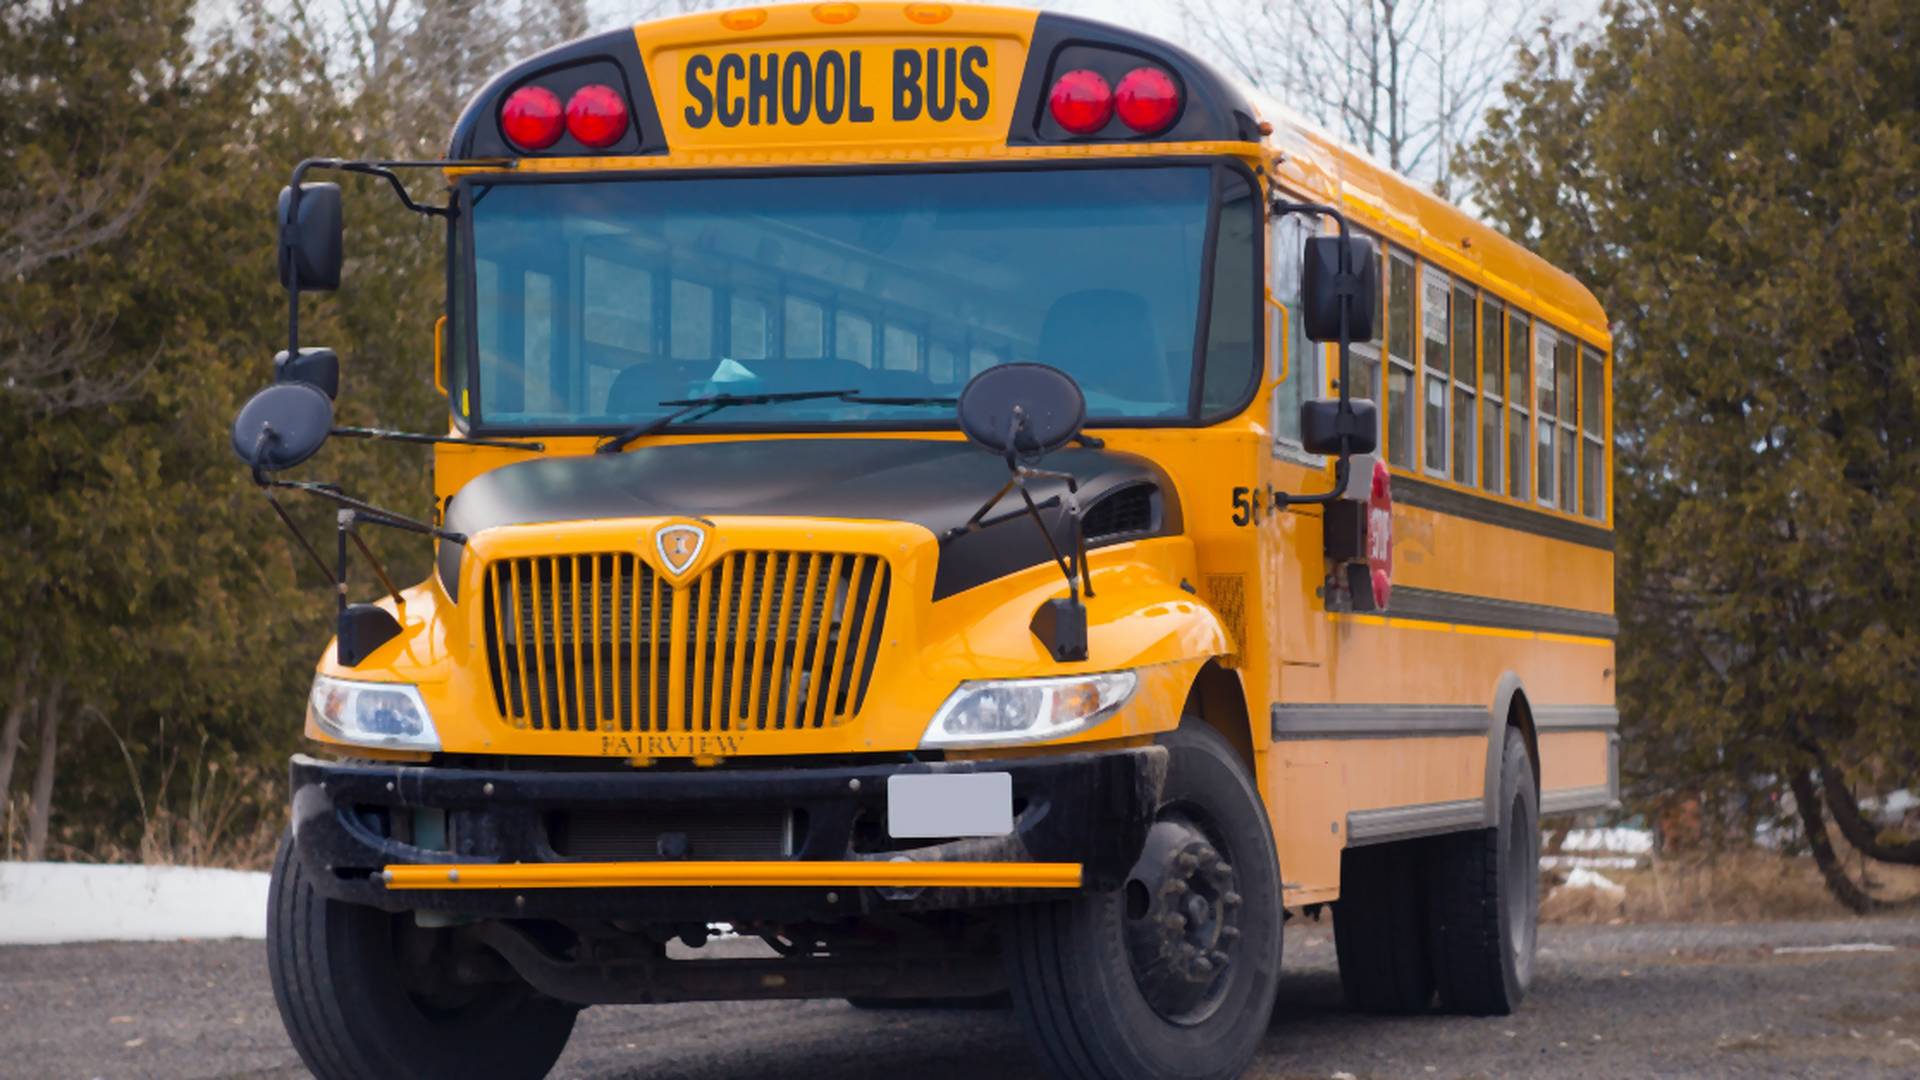 Únosca školského autobusu sa vzdal po niekoľkých kilometroch. Vyhnali ho otravné otázky detí